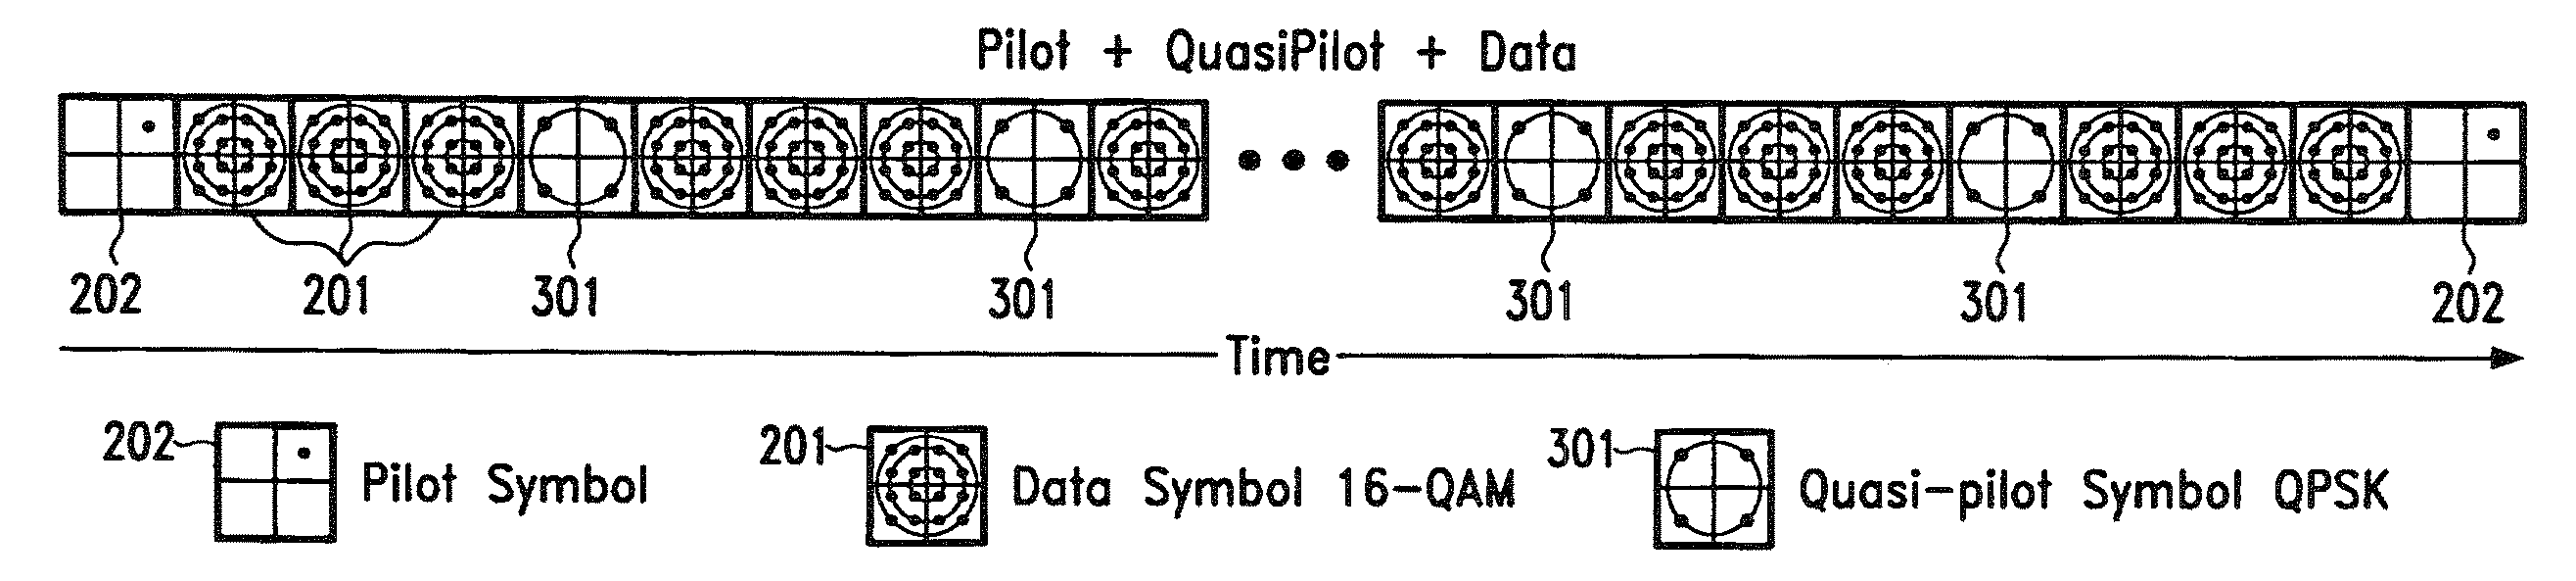 Quasi-Pilot Symbol Substitution